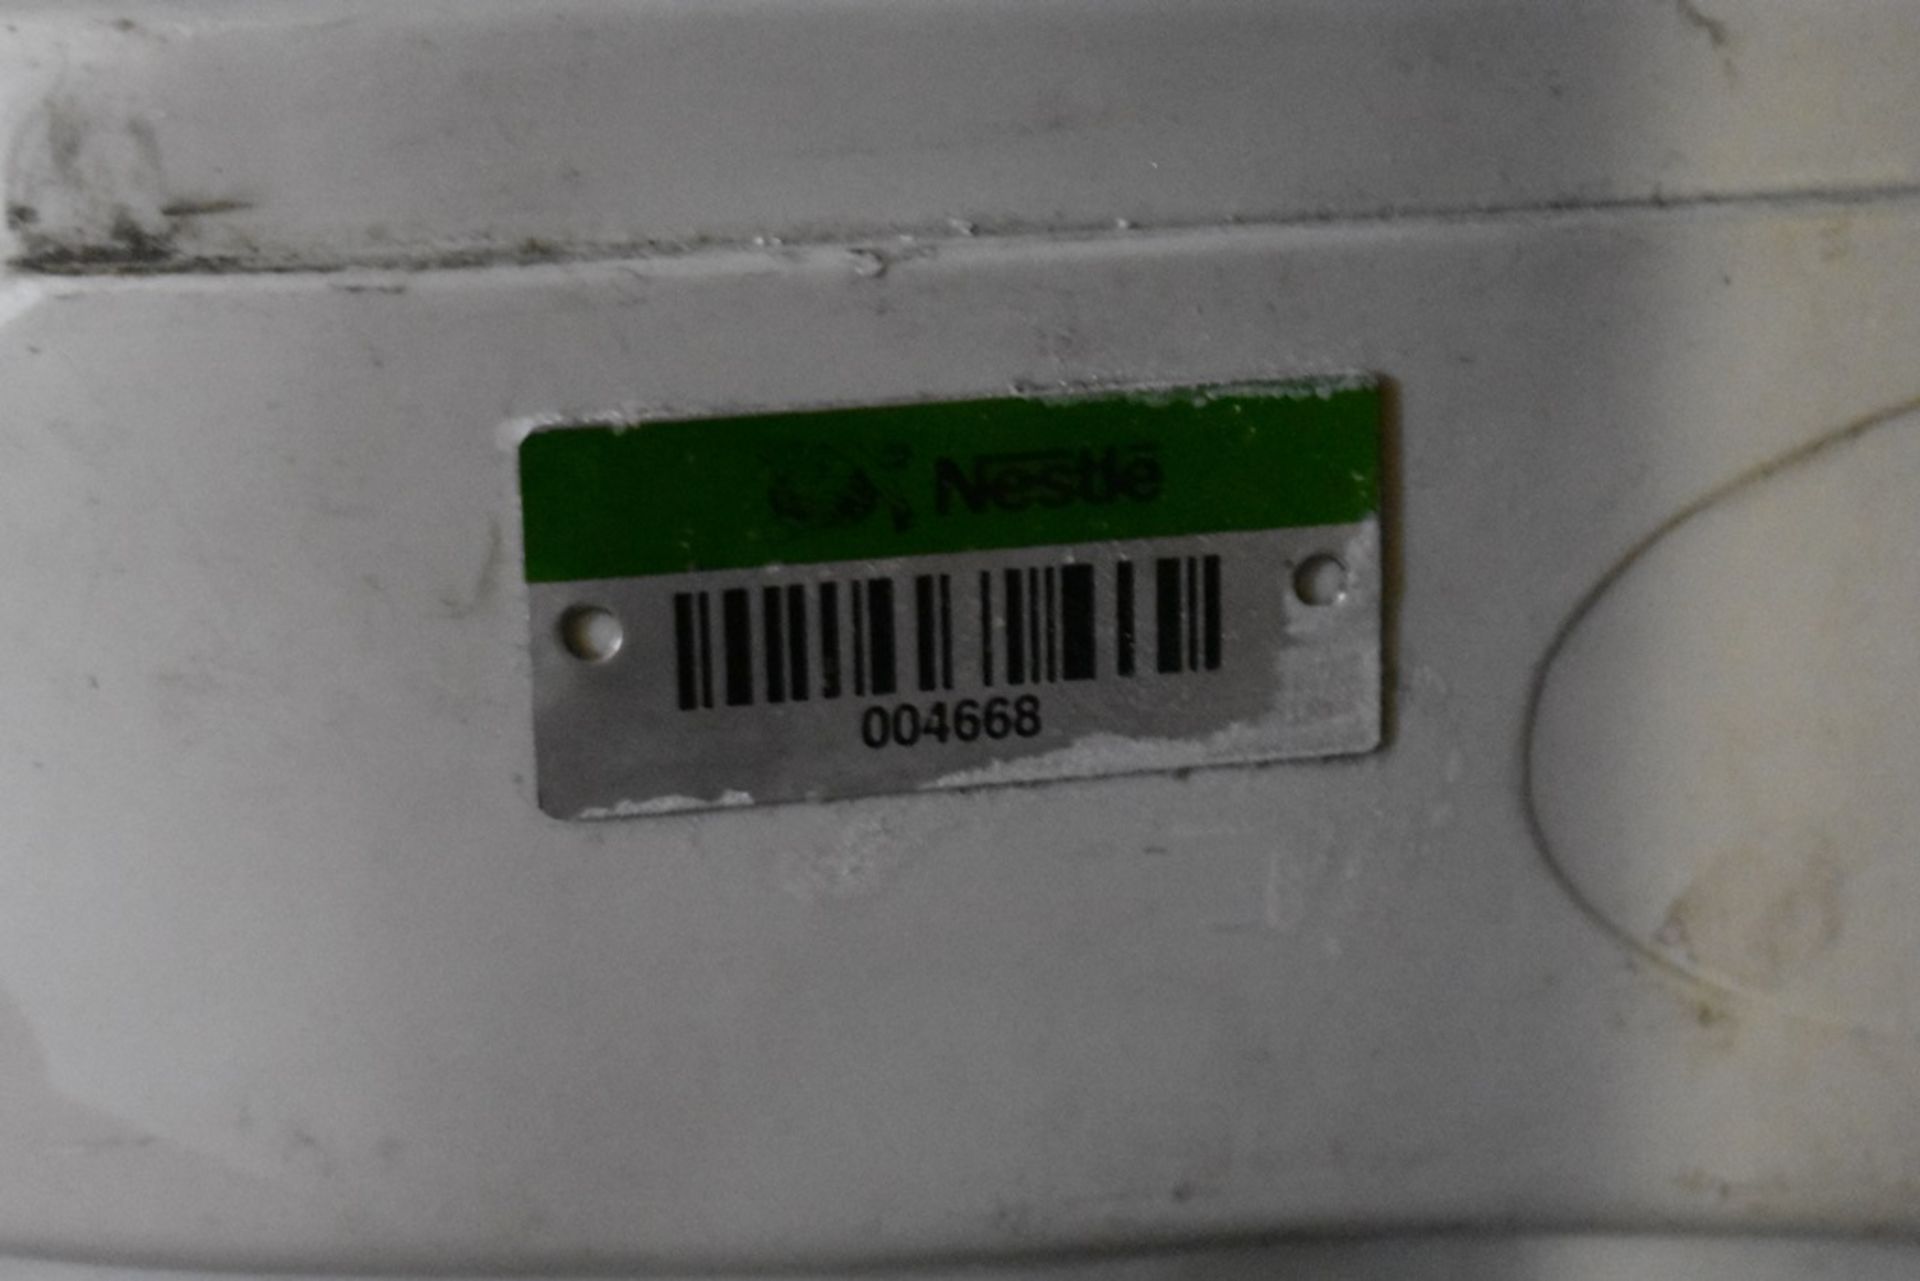 Equipo de filtro suavizador, Activo: 004668, incluye un filtro. Sólo por partes. - Image 8 of 8